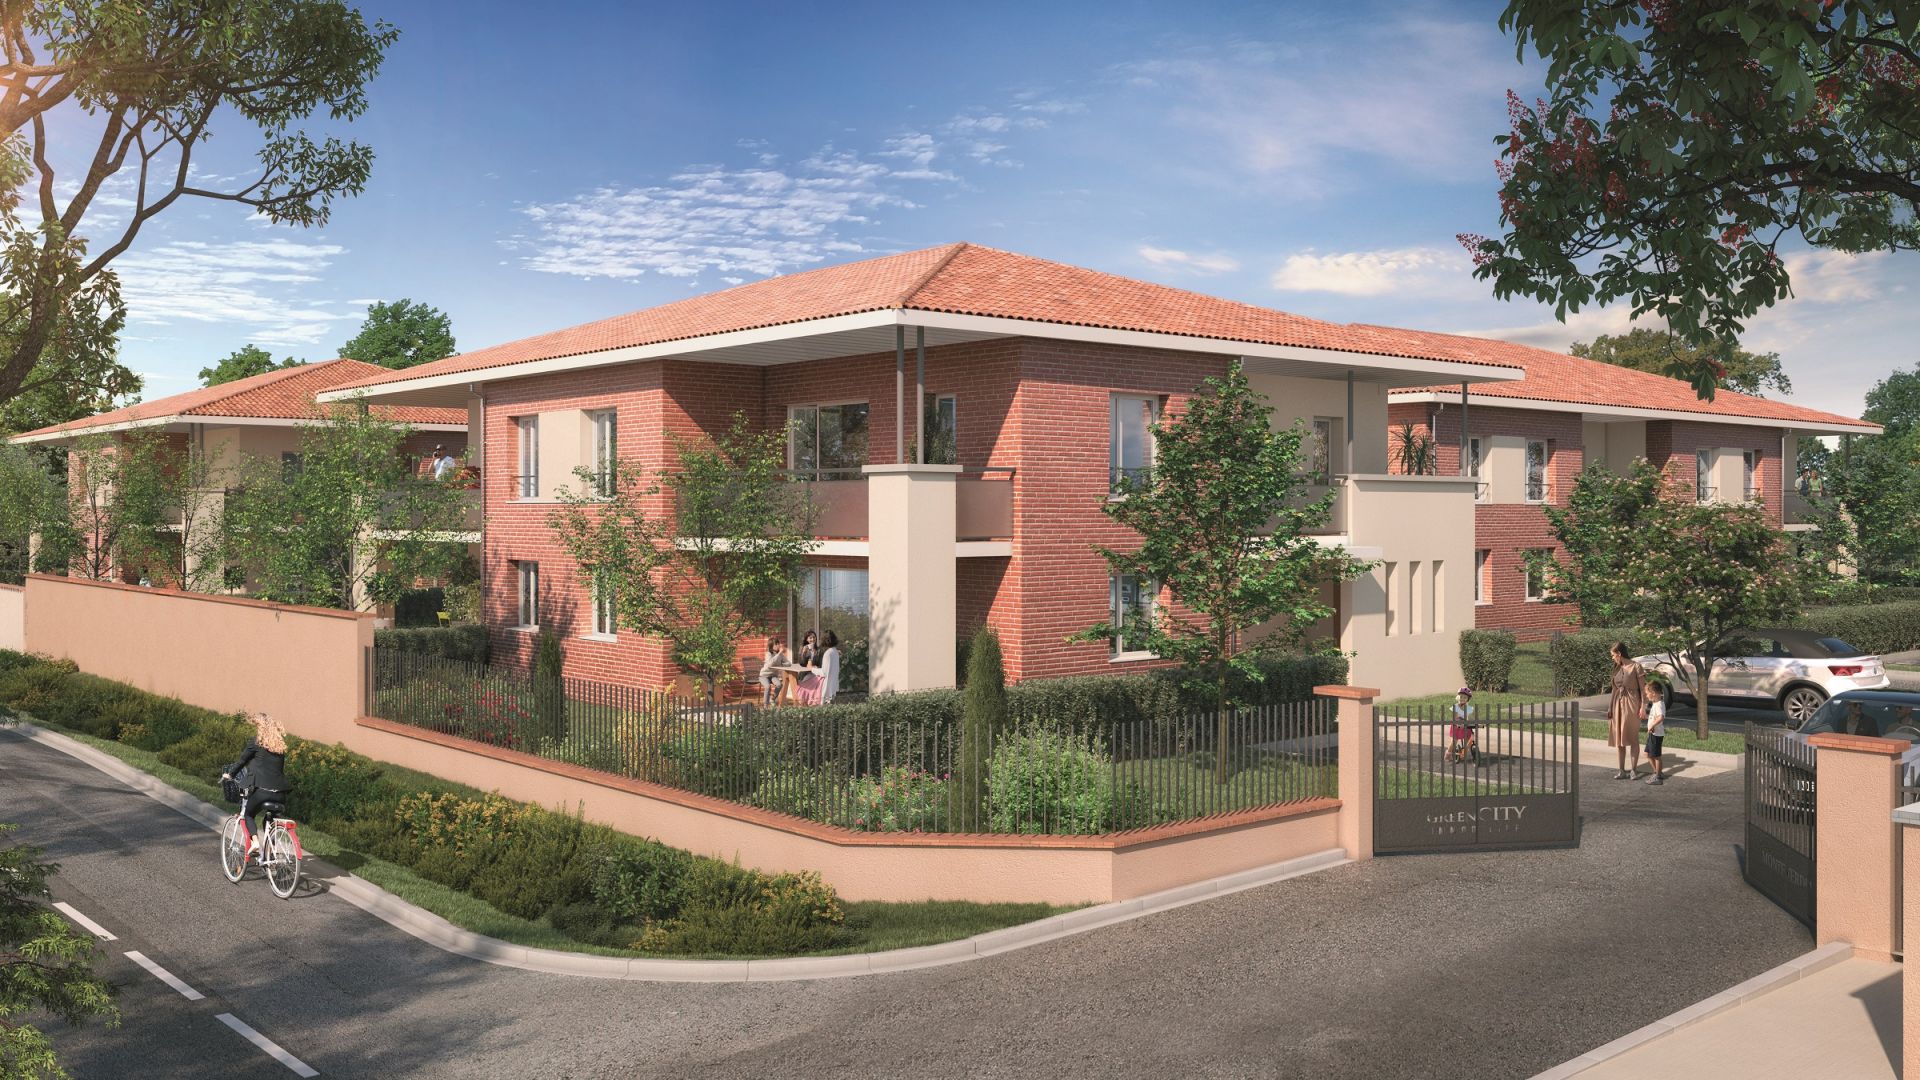 Greencity immobilier - achat appartements neufs du T2 au T3 - Résidence Le Montéverdi 1 - 31600 Eaunes